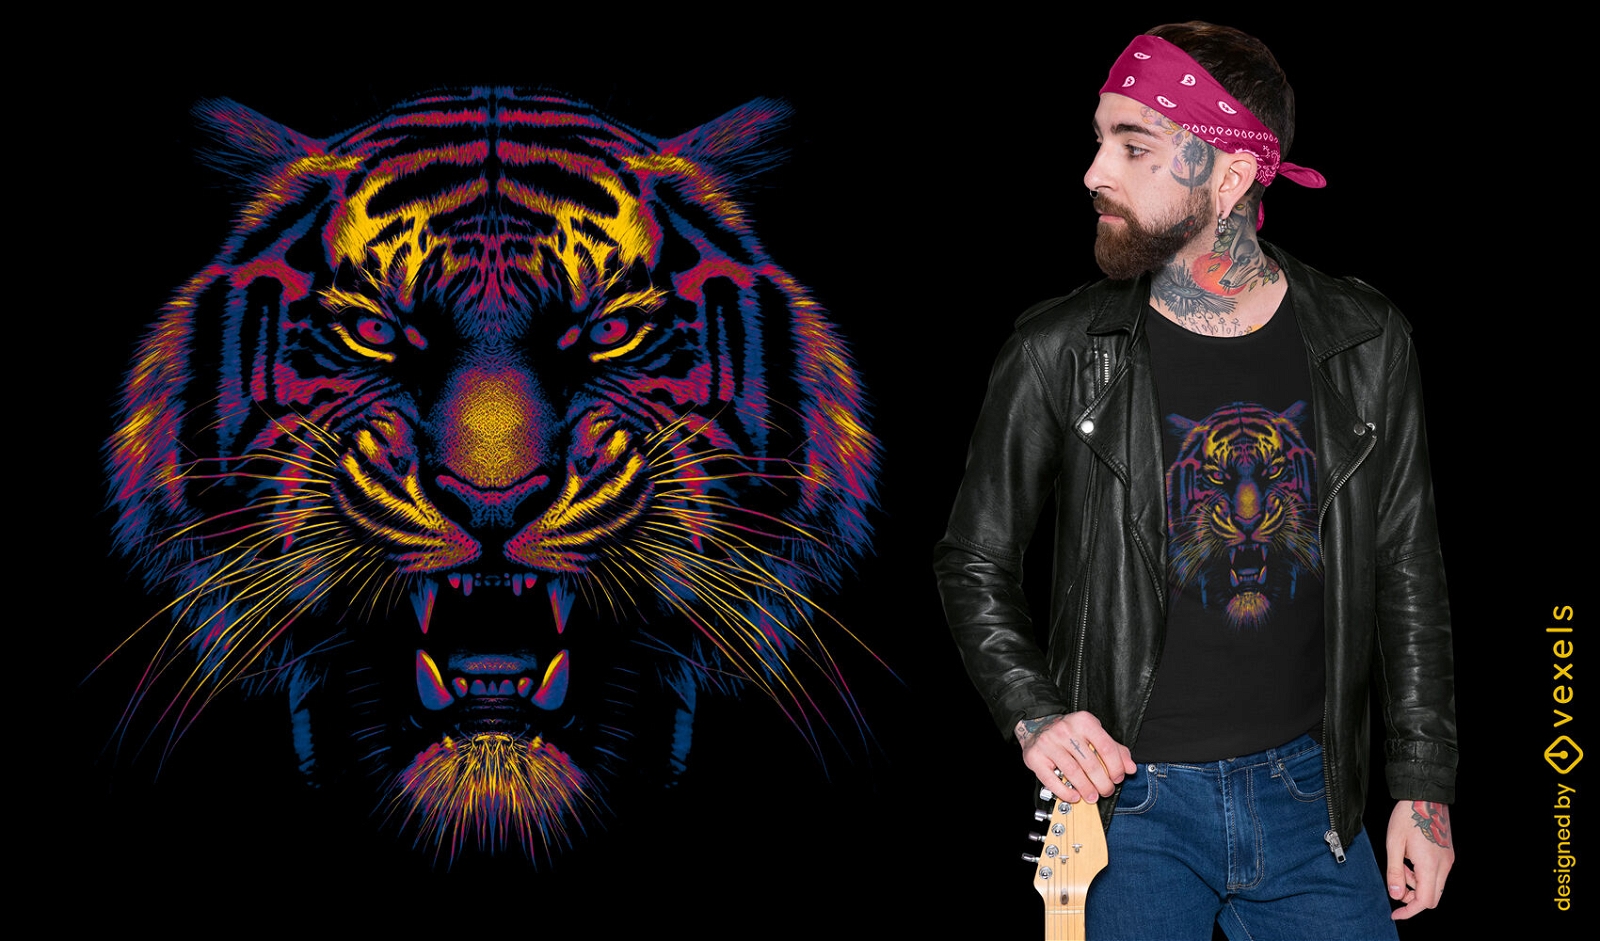 Dise?o de camiseta con cara de tigre vibrante.